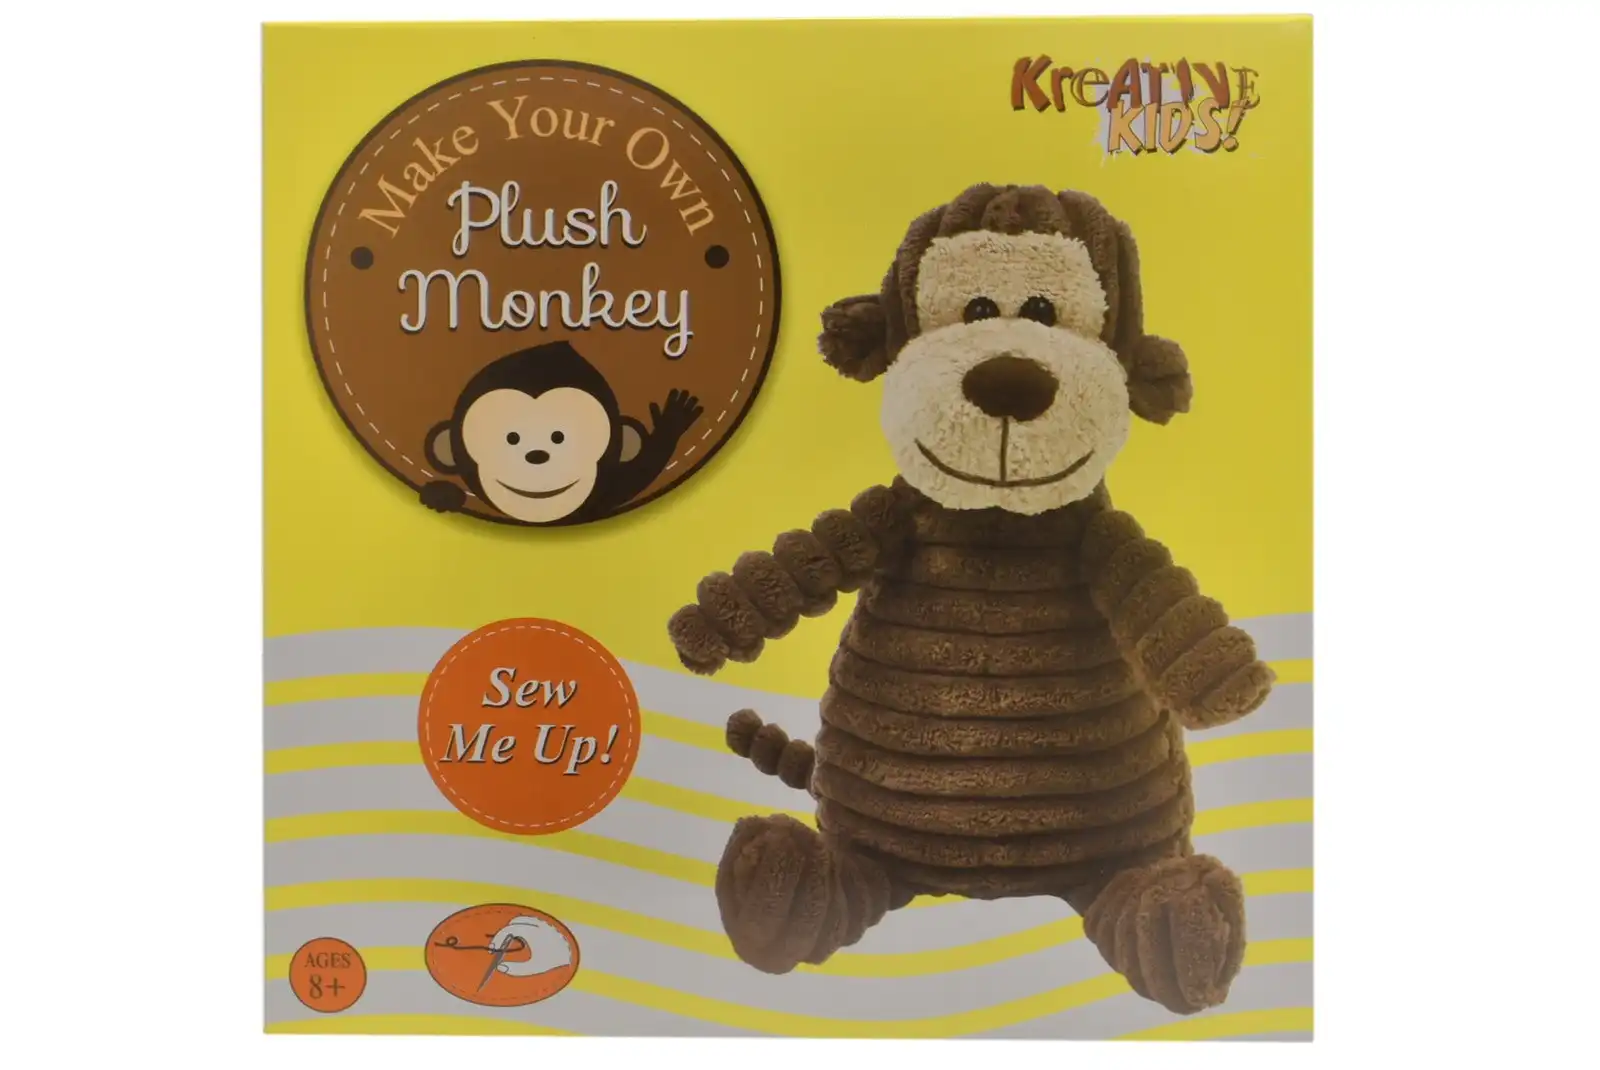 Make Your Own Plush Monkey